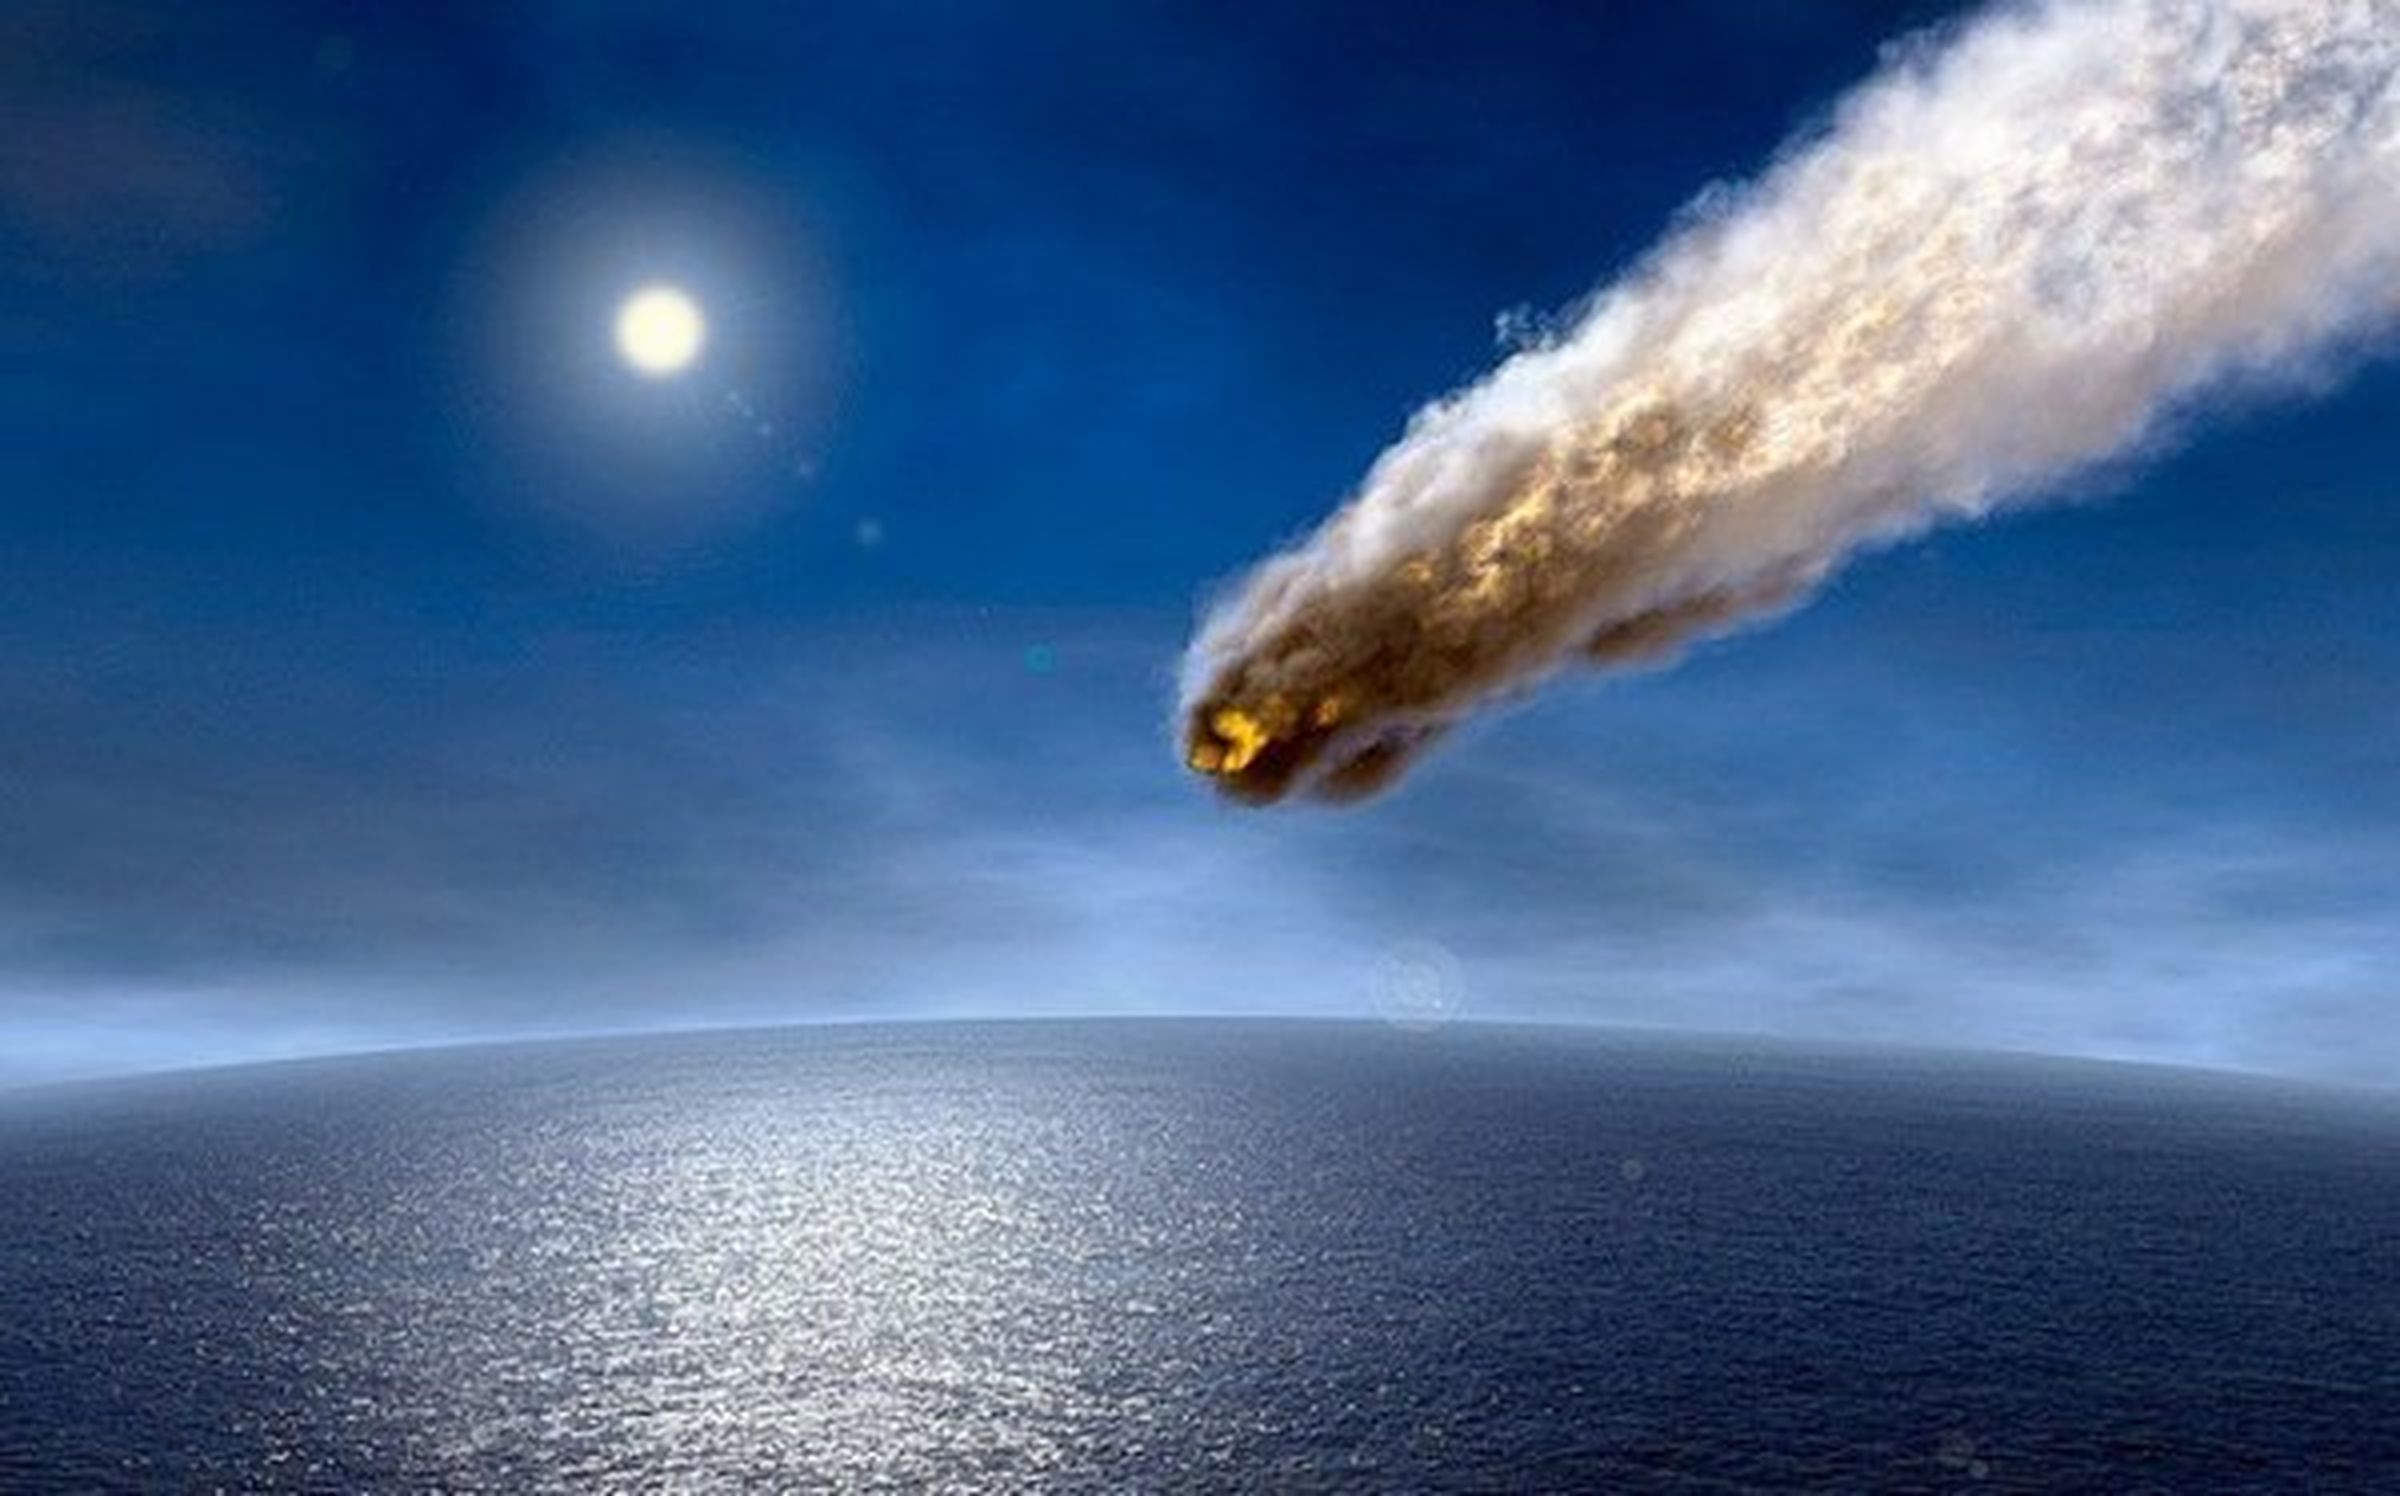 Из космоса в направлении Земли летит очередная угроза в виде громадного астероида